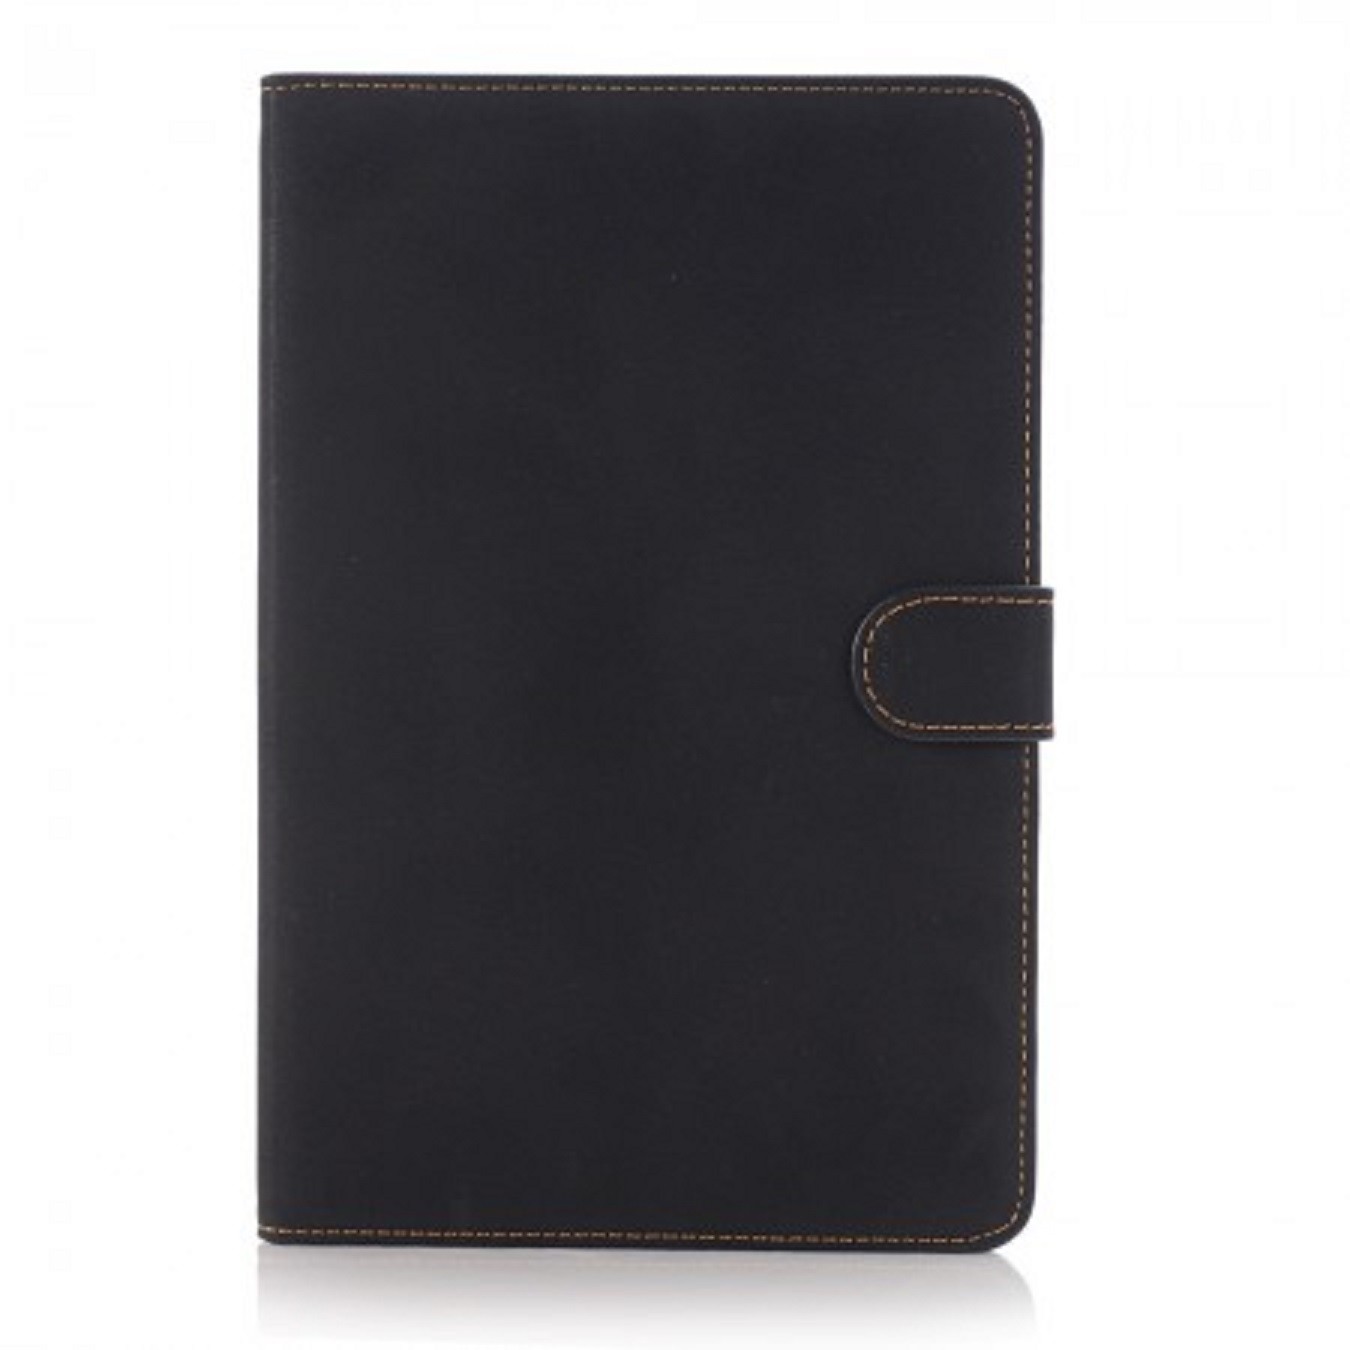 Ochranné pouzdro pro iPad Pro, luxusní provedení, černé